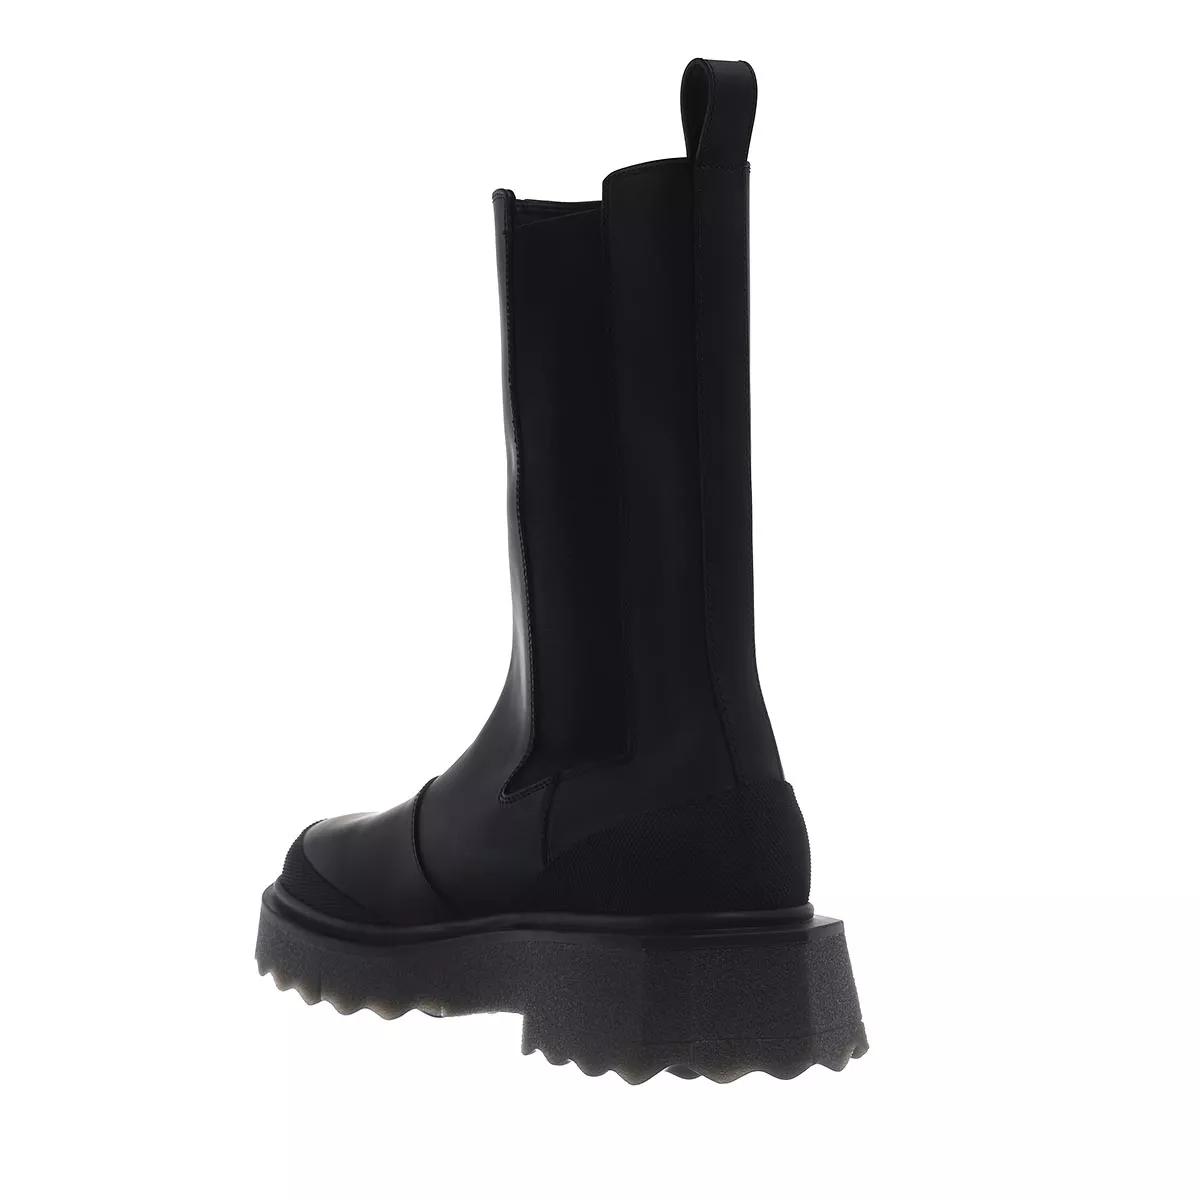 Off-White Boots & Stiefeletten - Calf Sponge Chelsea Boot - Gr. 38 (EU) - in Schwarz - für Damen von Off-White